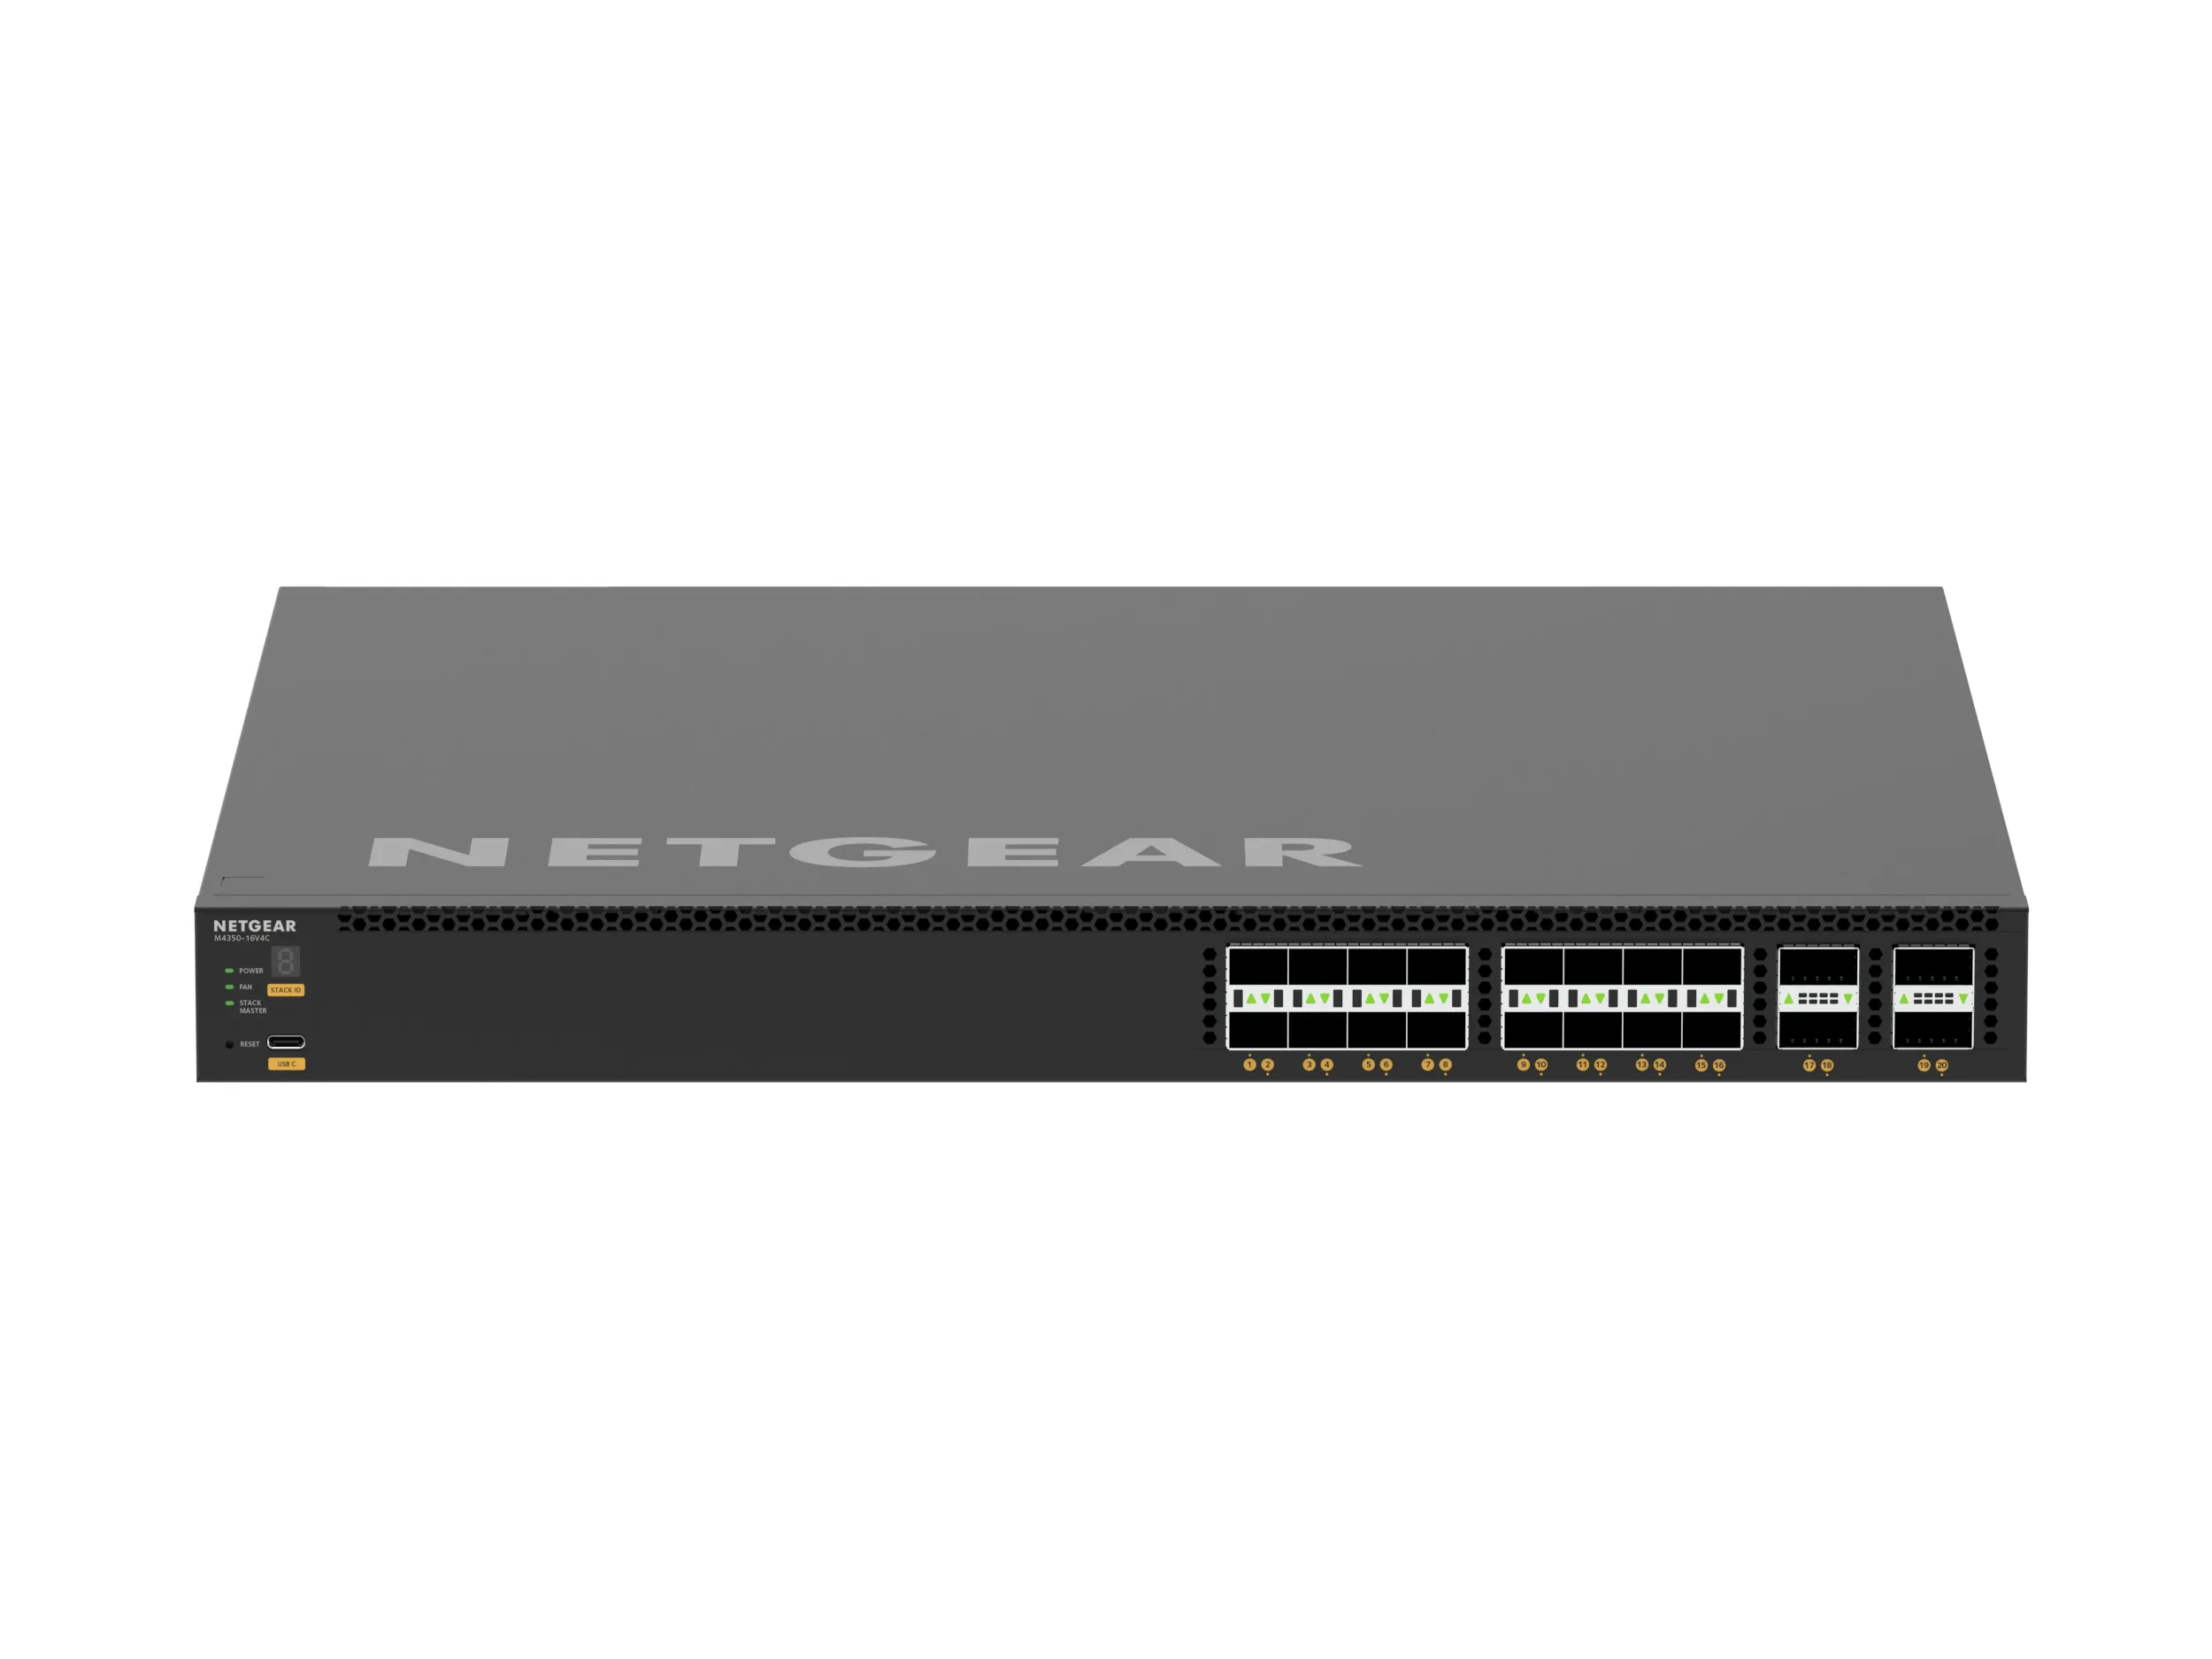 Vente NETGEAR 24PT M4350-16V4C Managed Switch NETGEAR au meilleur prix - visuel 8